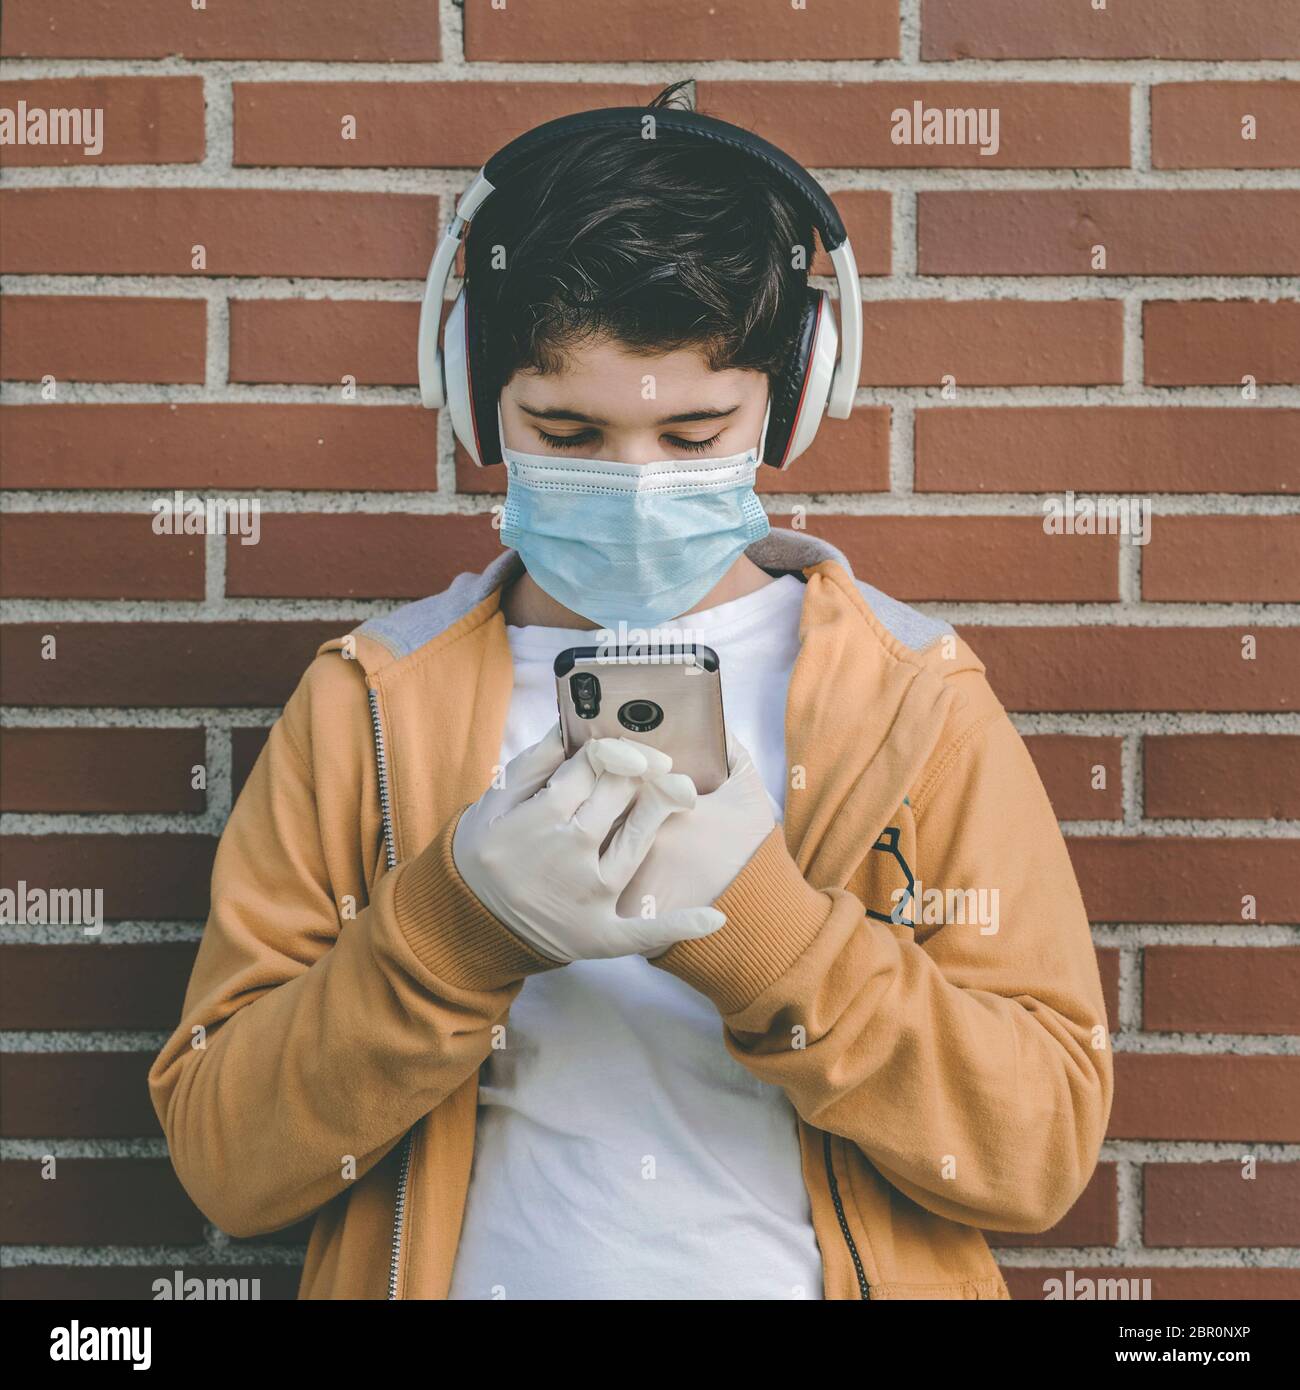 Kind trägt medizinische Maske mit Kopfhörer hört Musik mit seinem Smartphone im Freien Stockfoto